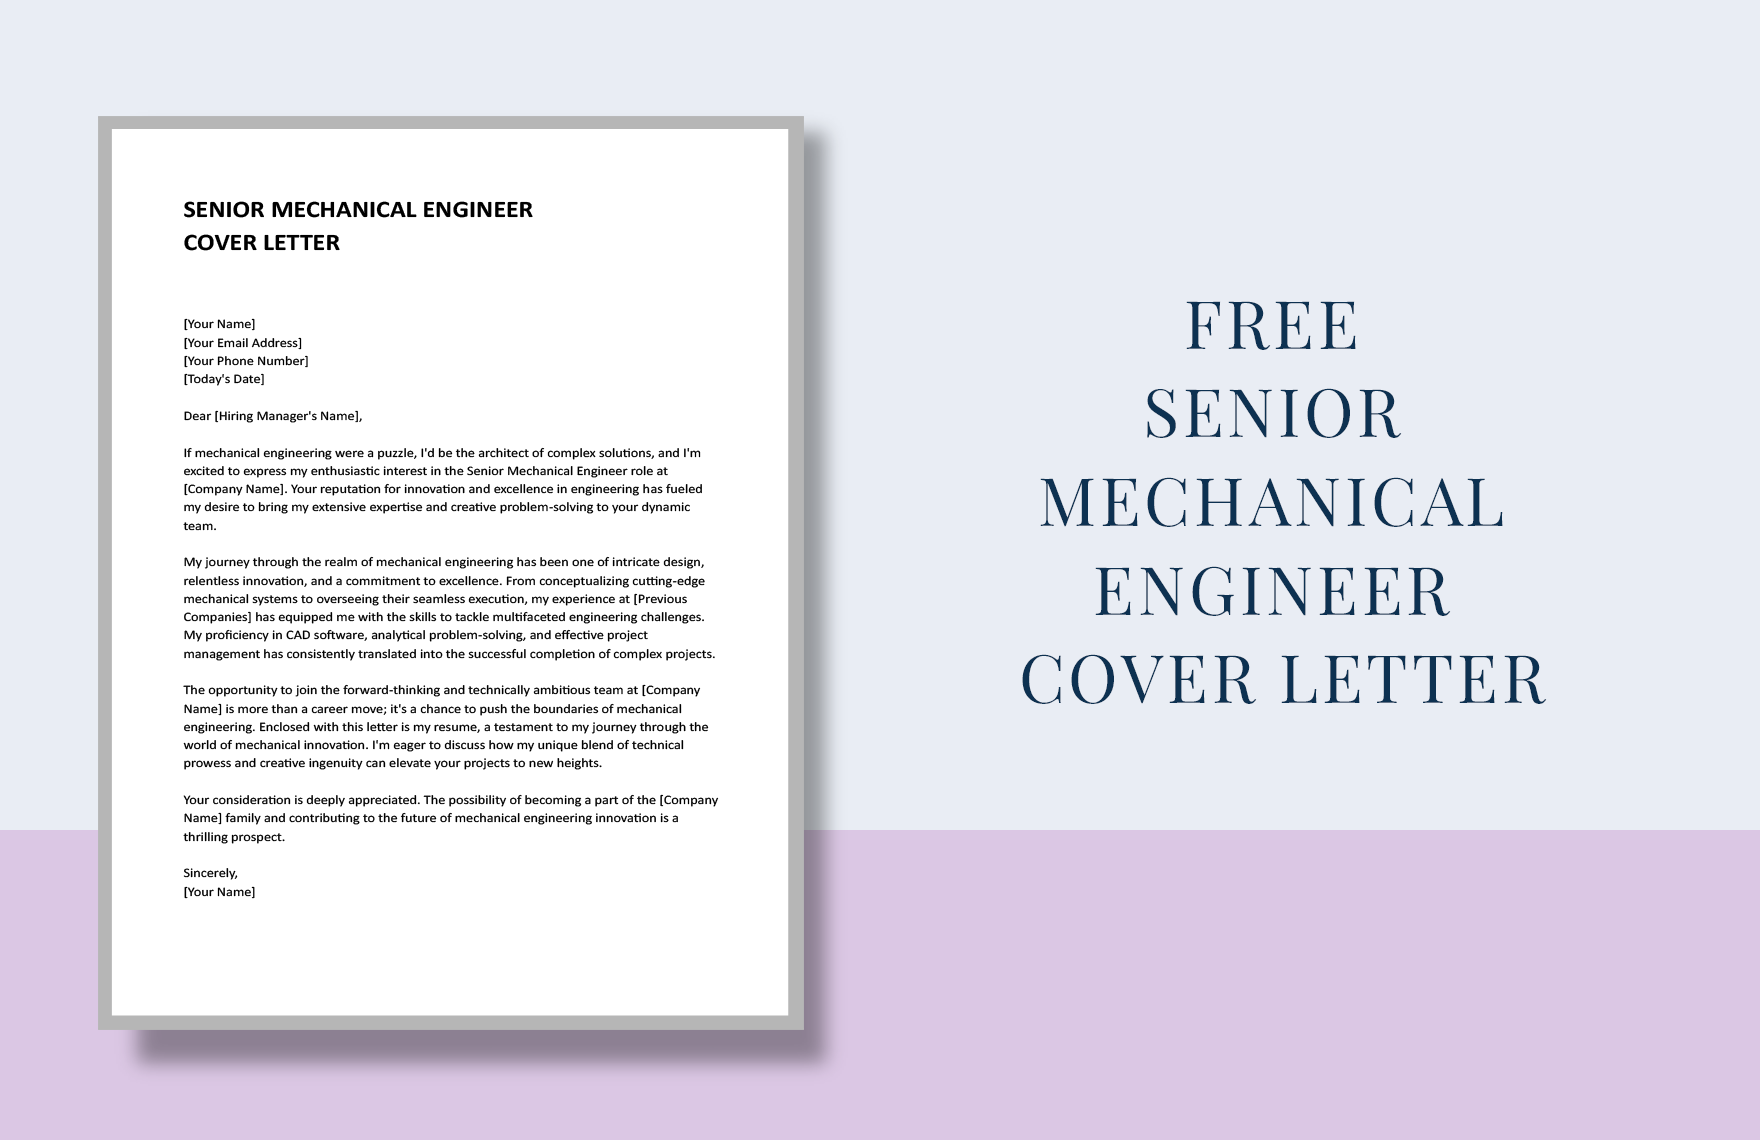 Senior Mechanical Engineer Cover Letter